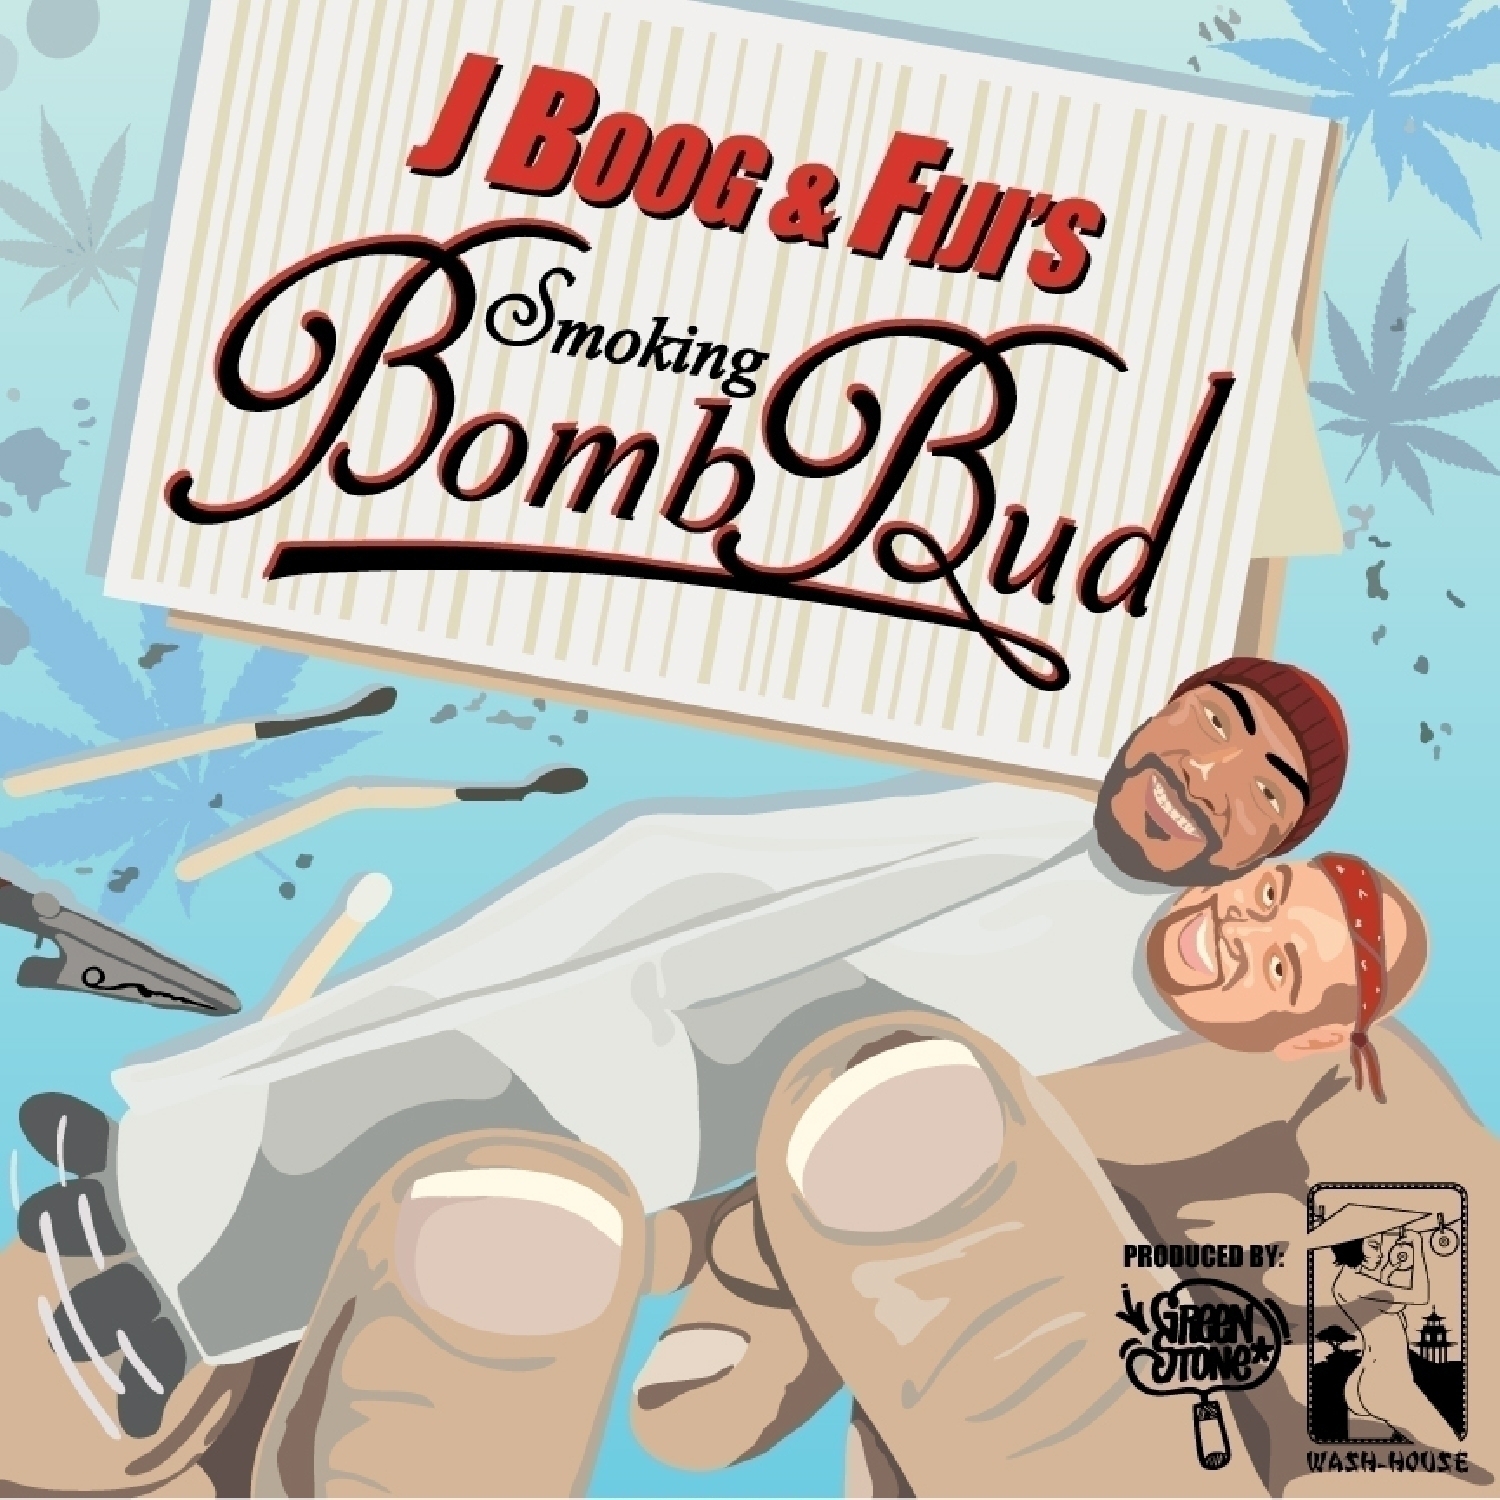 Smoking Bomb Bud - Single